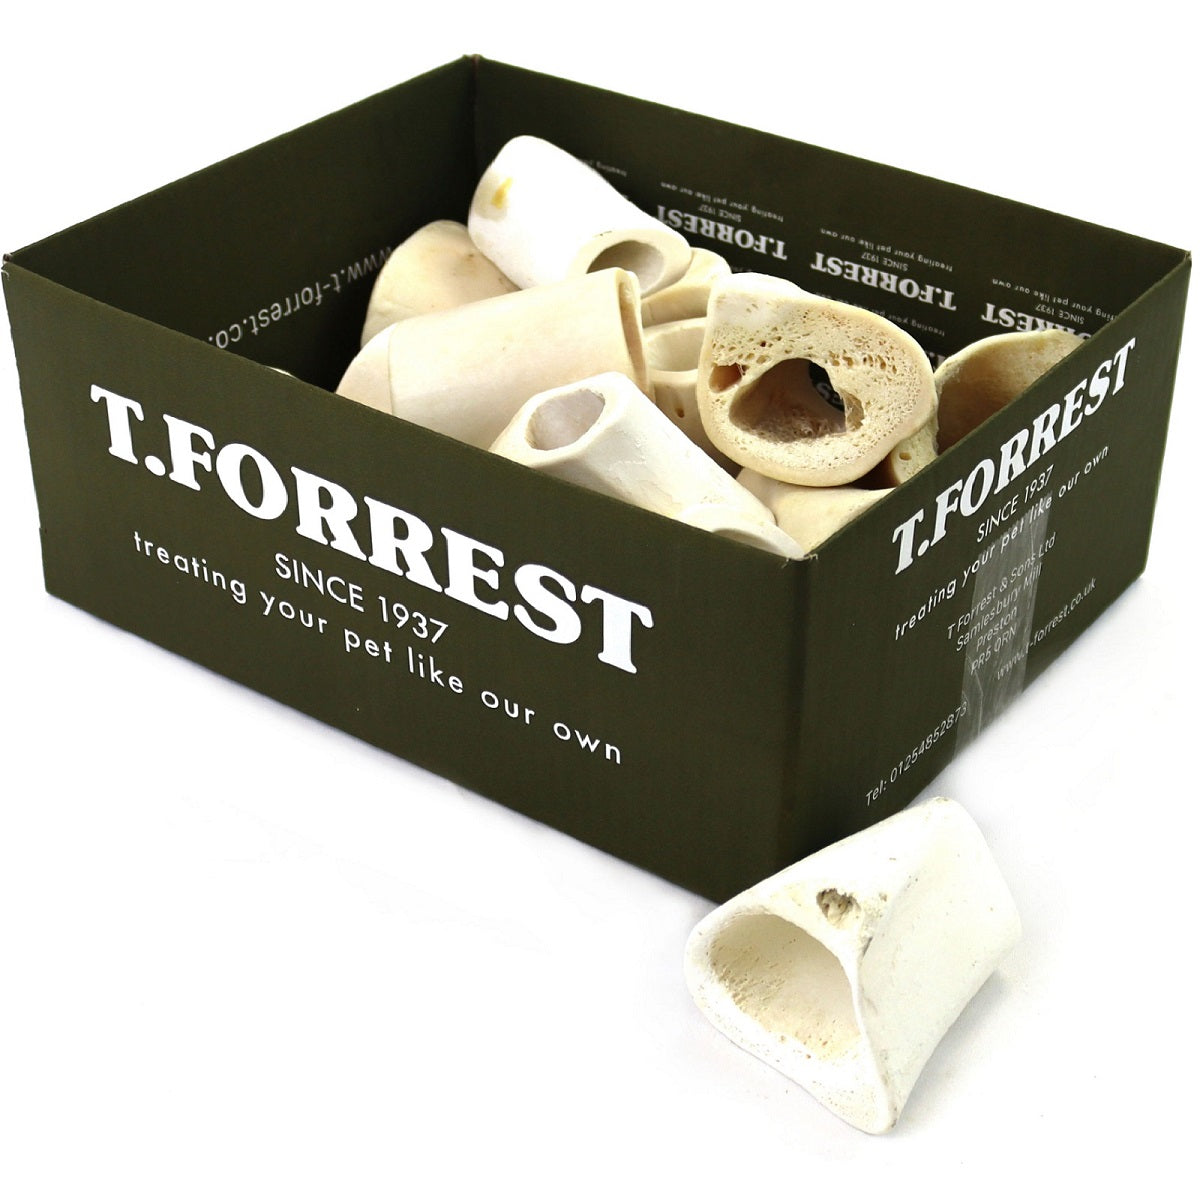 T.Forrest - Calcium Bones